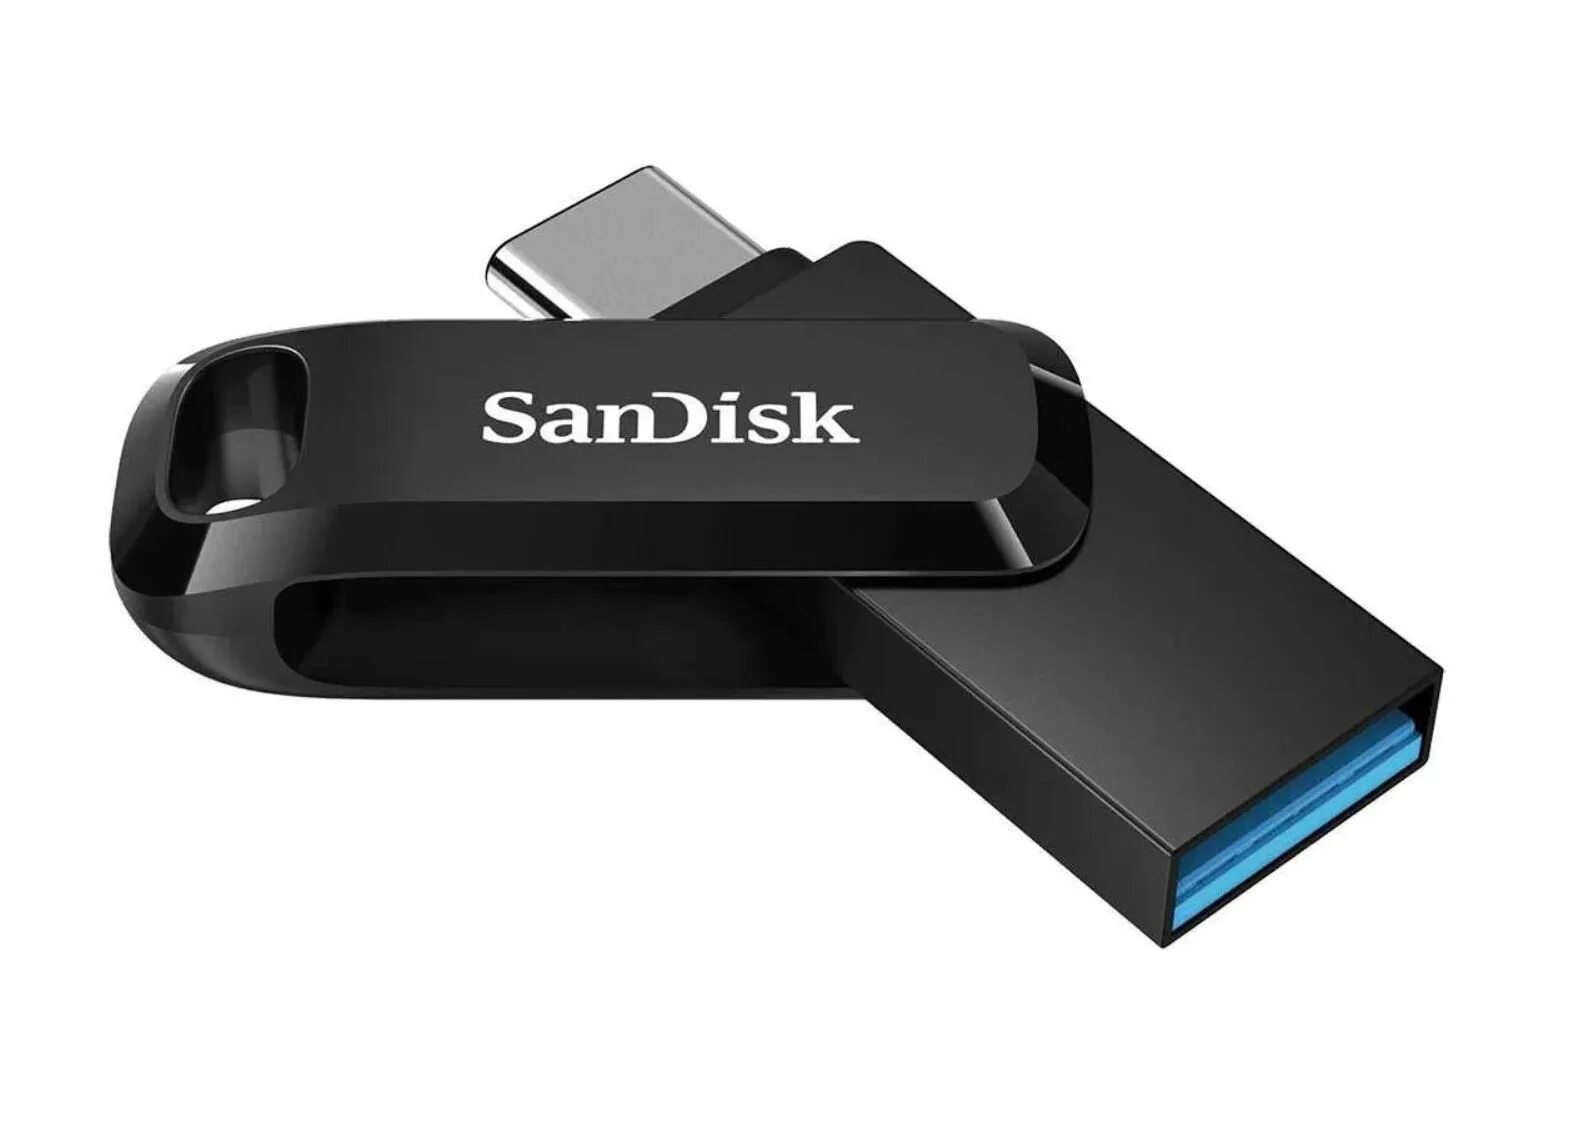 Флеш накопителя sandisk usb. SANDISK Ultra Dual Drive go USB Type-c. Флешка SANDISK 32gb. Накопитель USB SANDISK 64gb Ultra Dual Drive go USB 3.1/Type-c. USB Flash Drive 64gb - SANDISK Ultra Dual Drive go USB Type-c sdddc3-064g-g46.